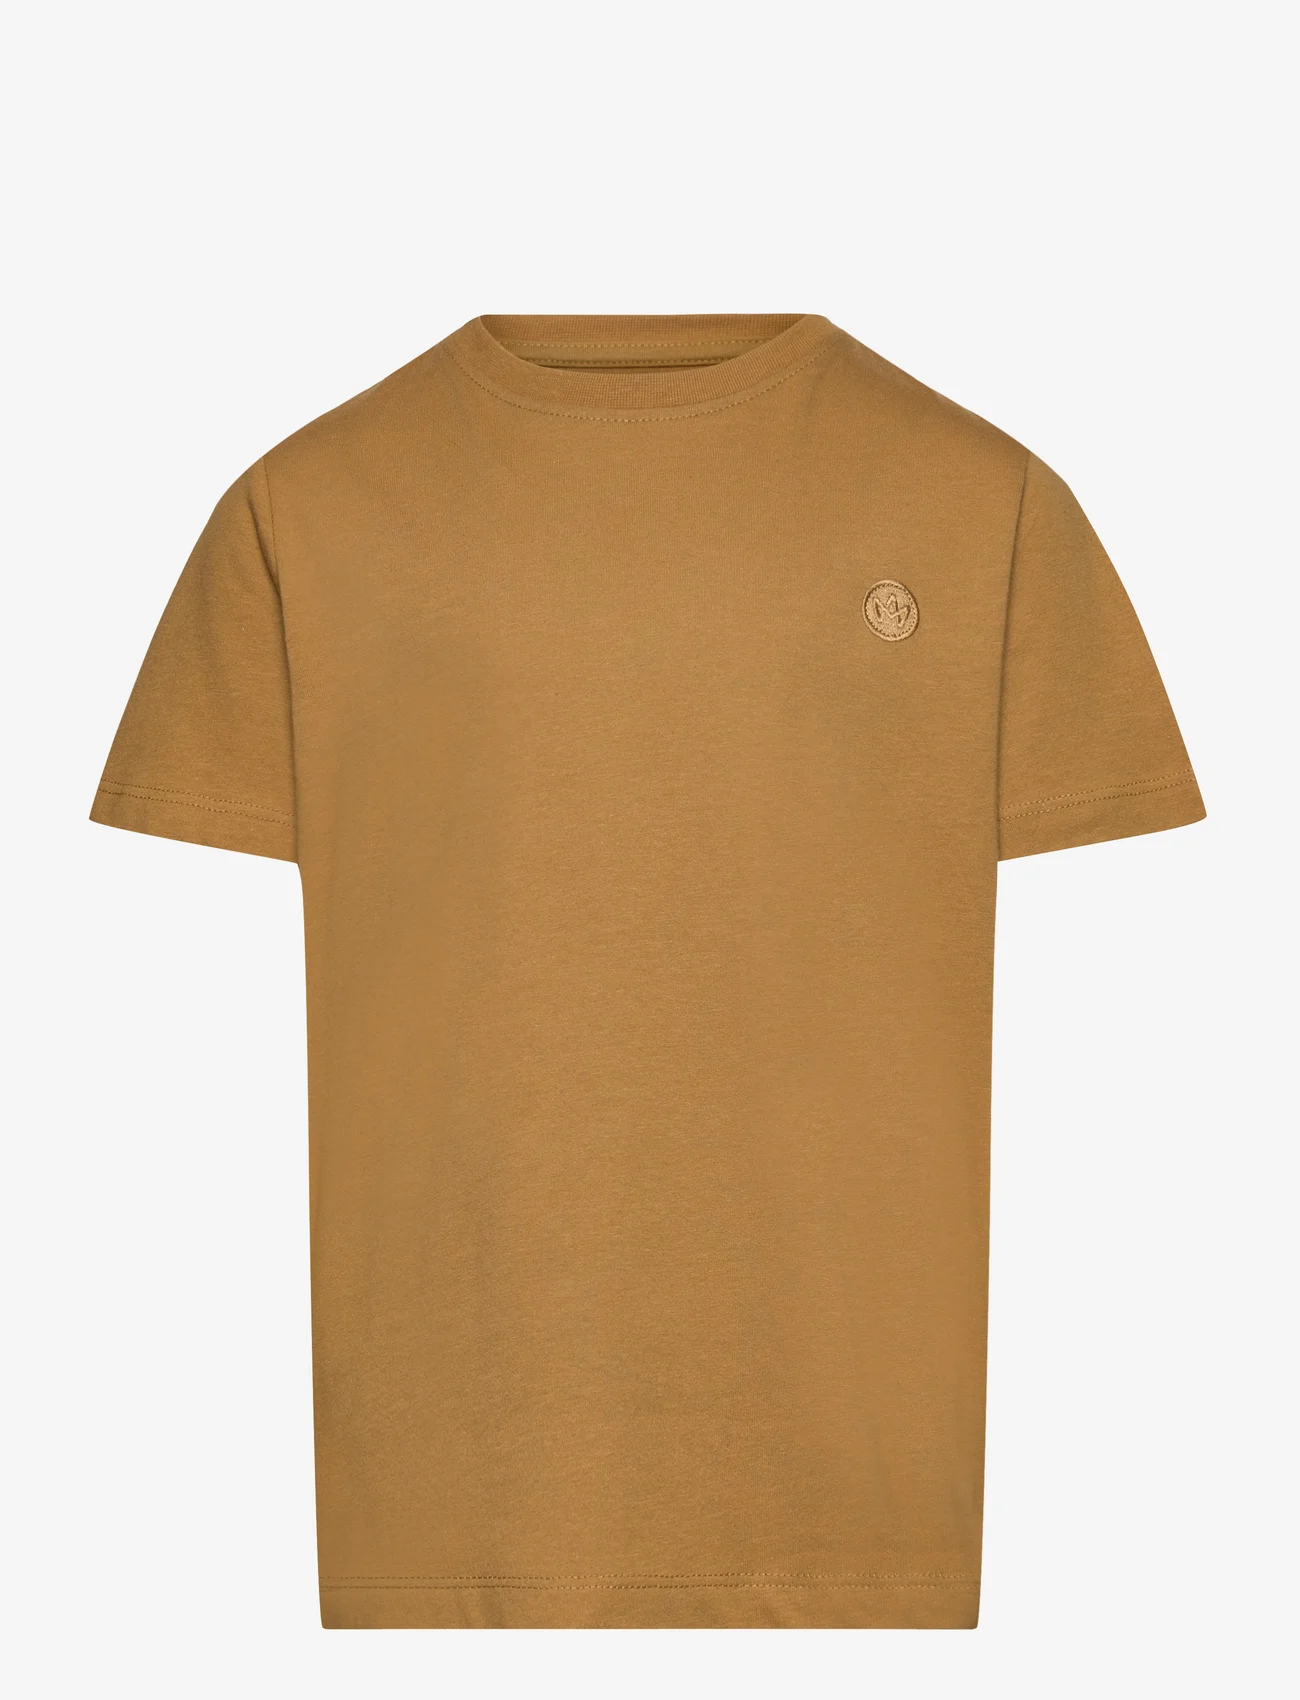 Kronstadt - Timmi Kids Organic/Recycled t-shirt - kortærmede - olive gold - 0